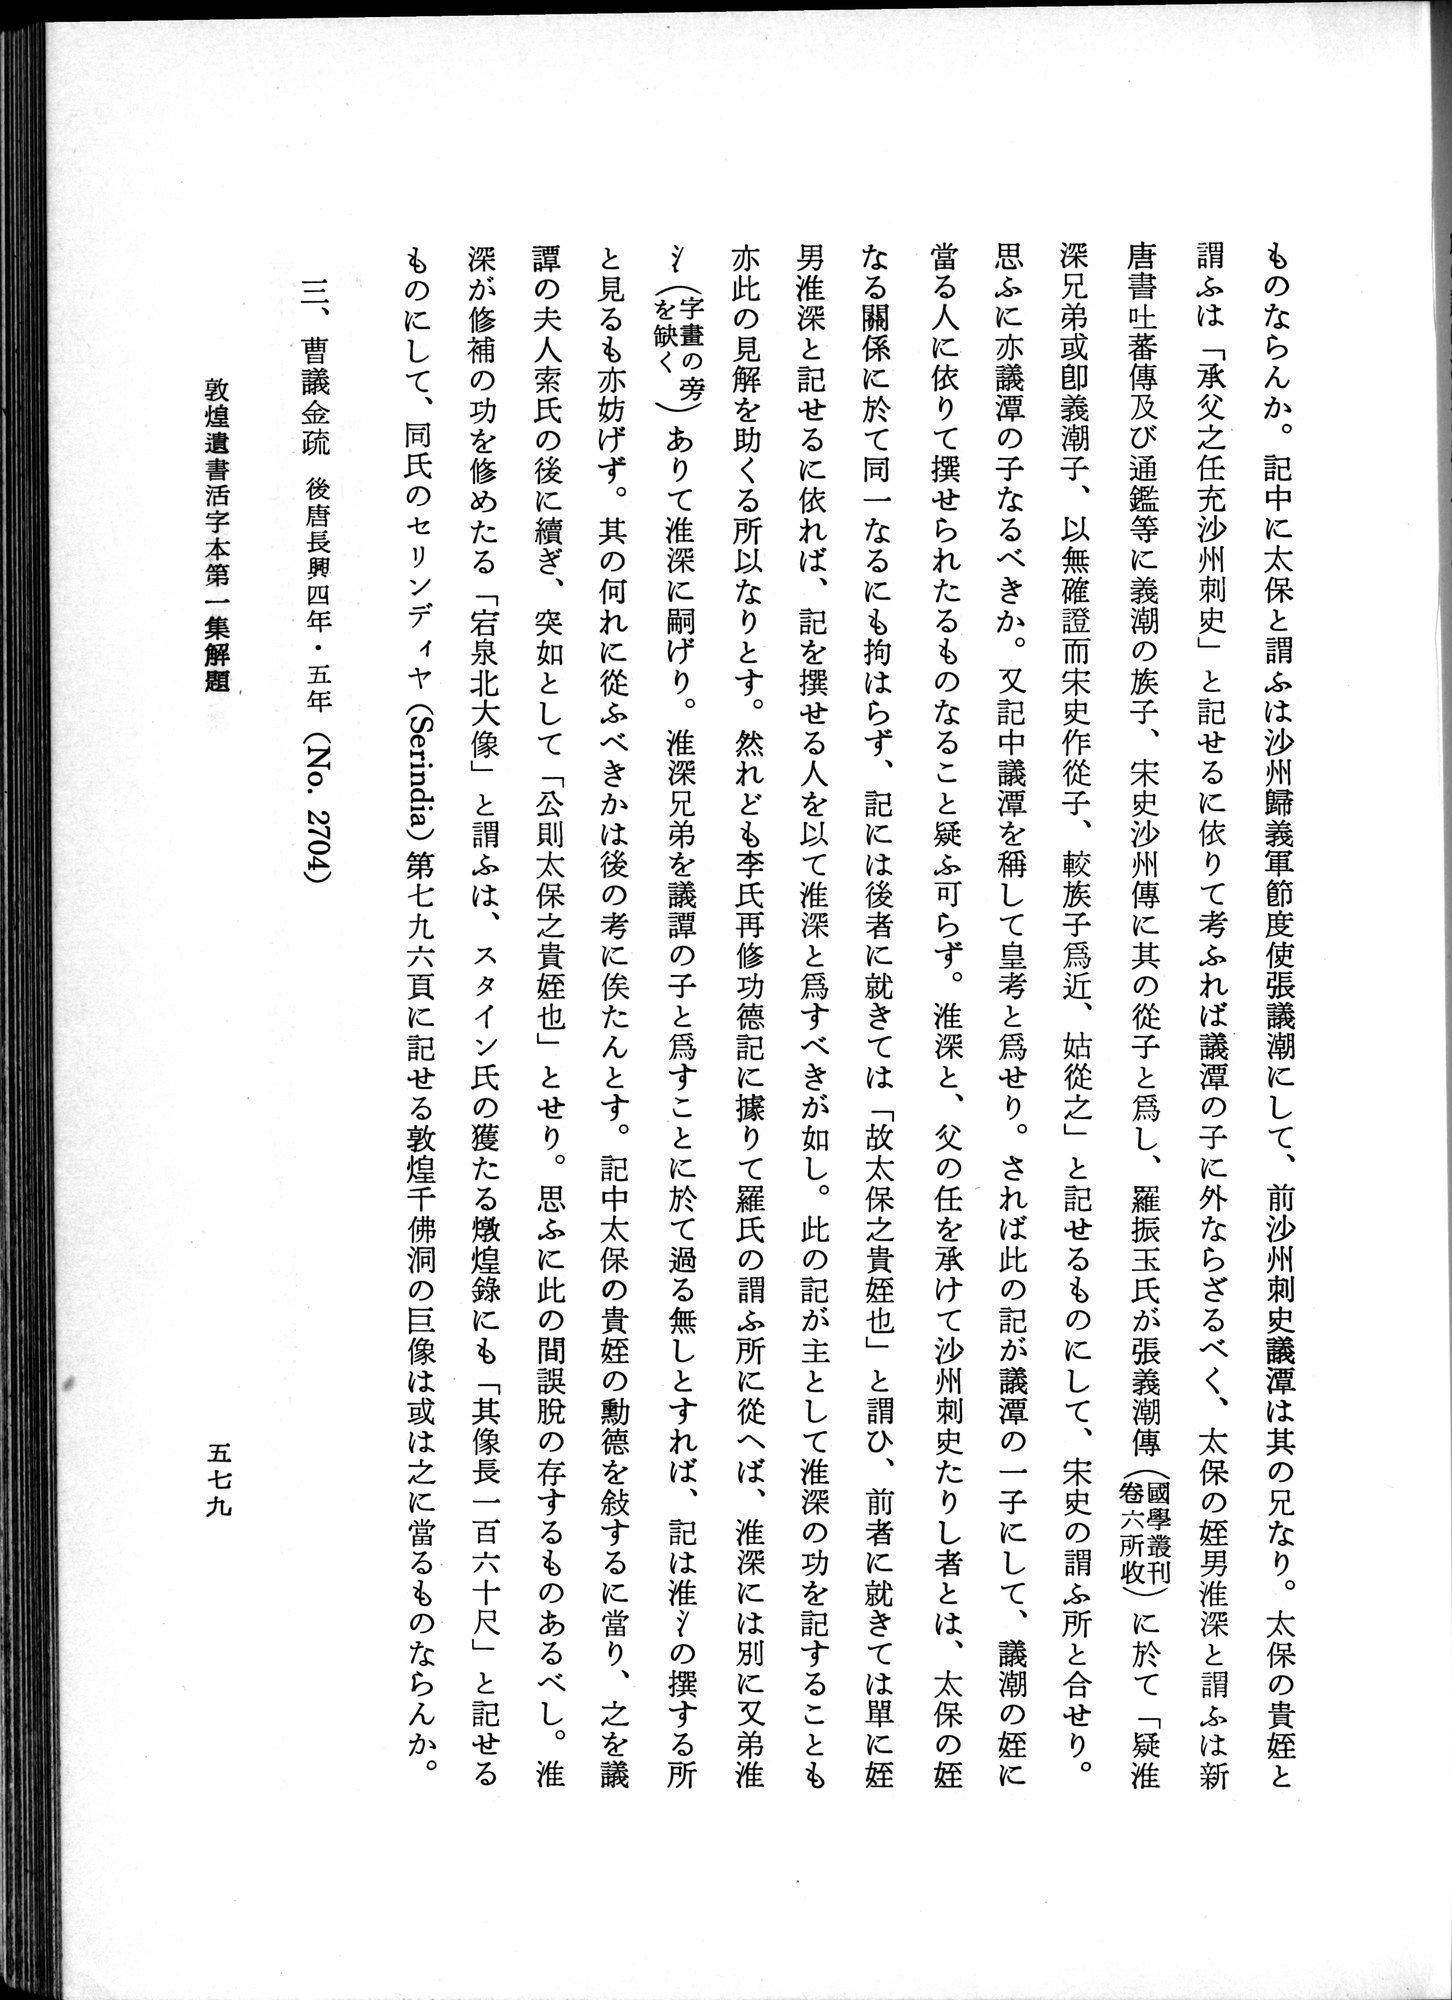 羽田博士史学論文集 : vol.1 / Page 617 (Grayscale High Resolution Image)